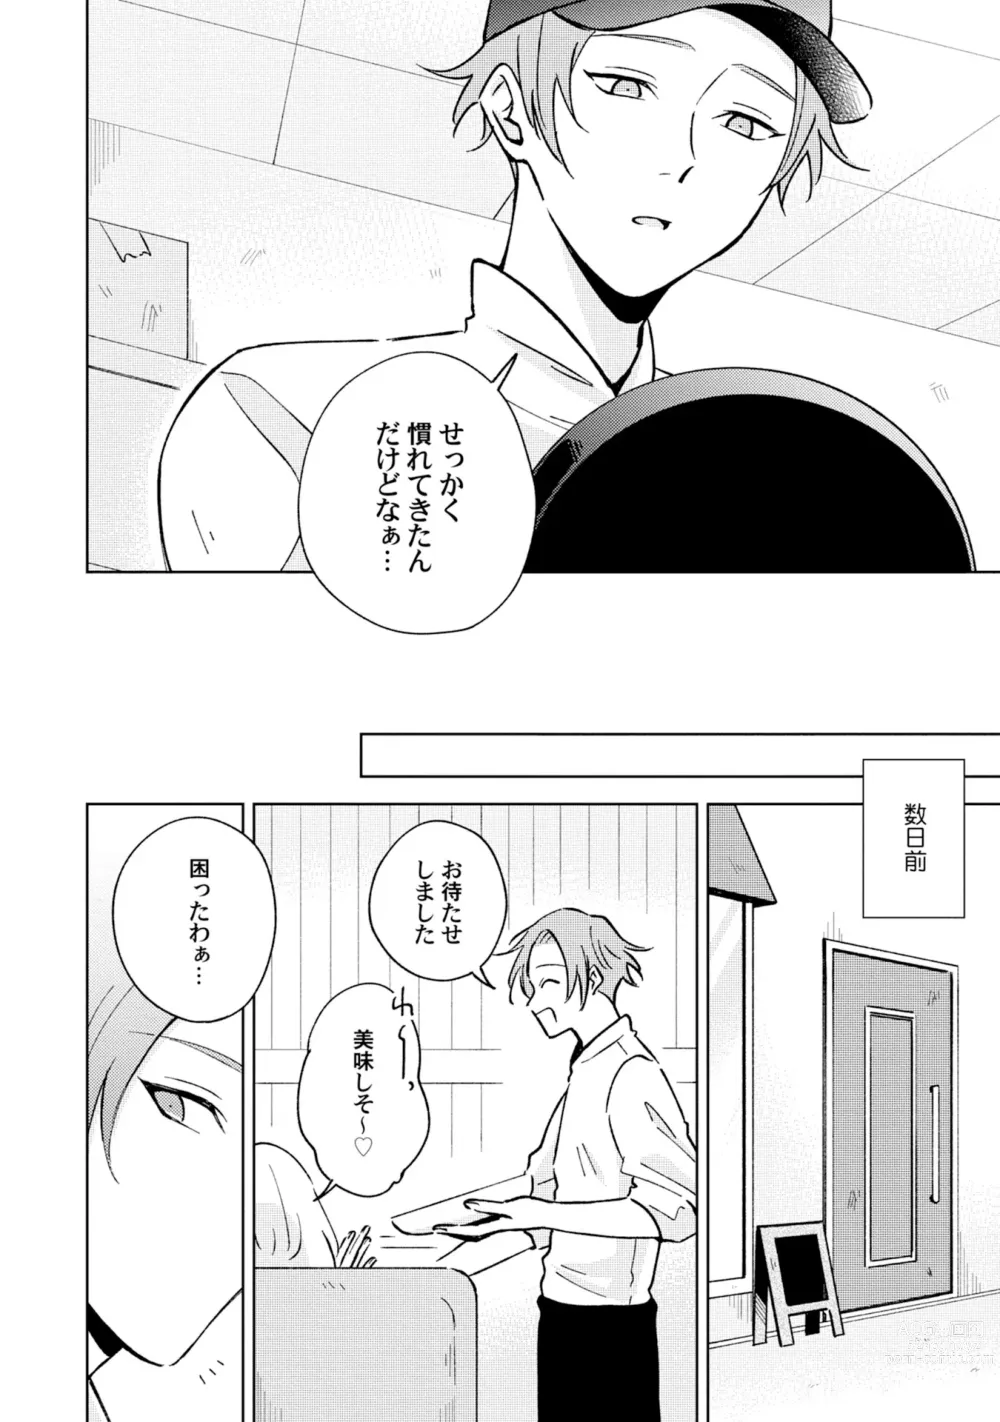 Page 4 of manga Toho 3-byou no Trouble Love Room 4